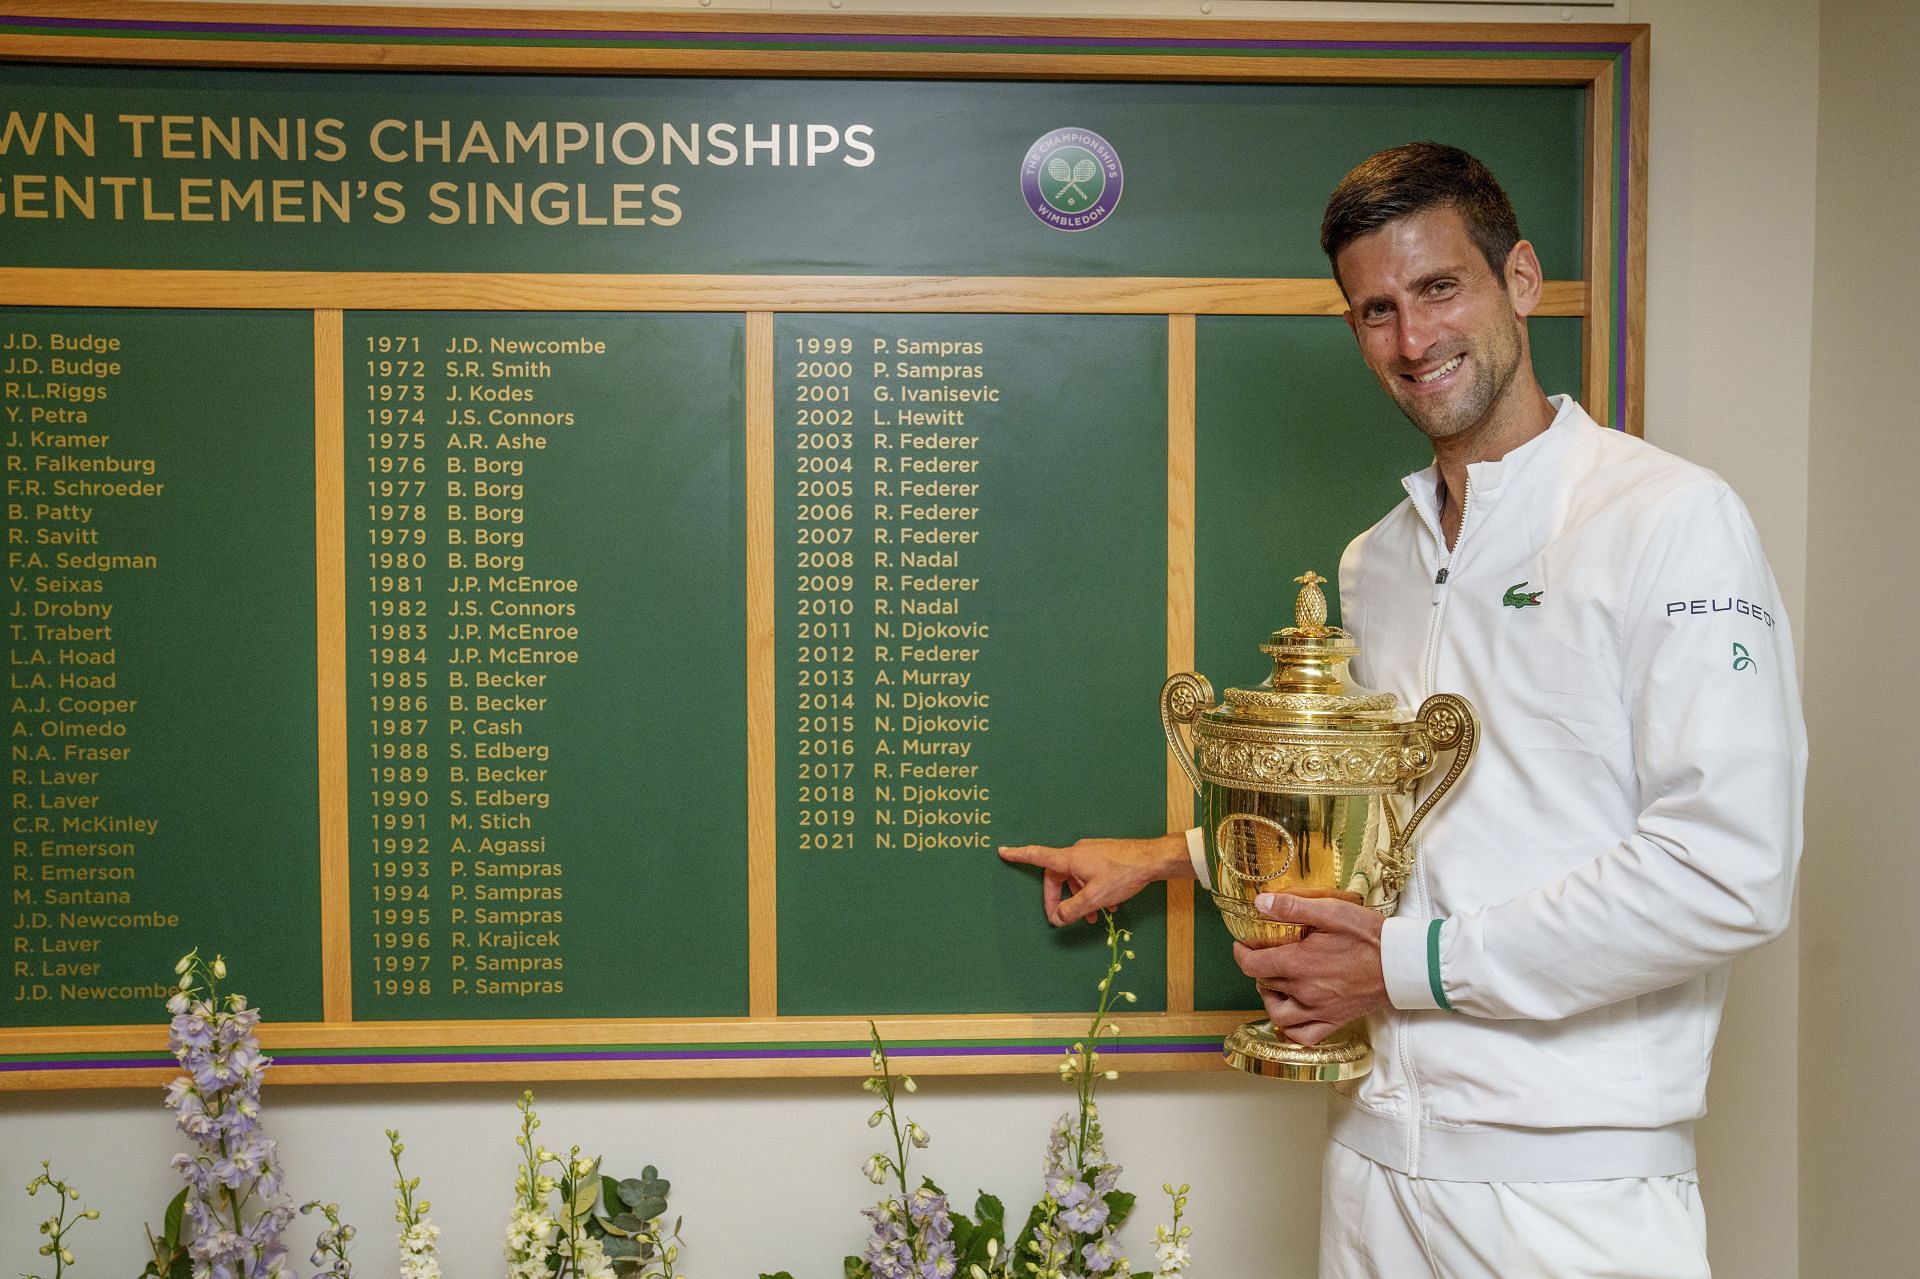 Novak Djokovic celebrates winning the 2021 Wimbledon Championships